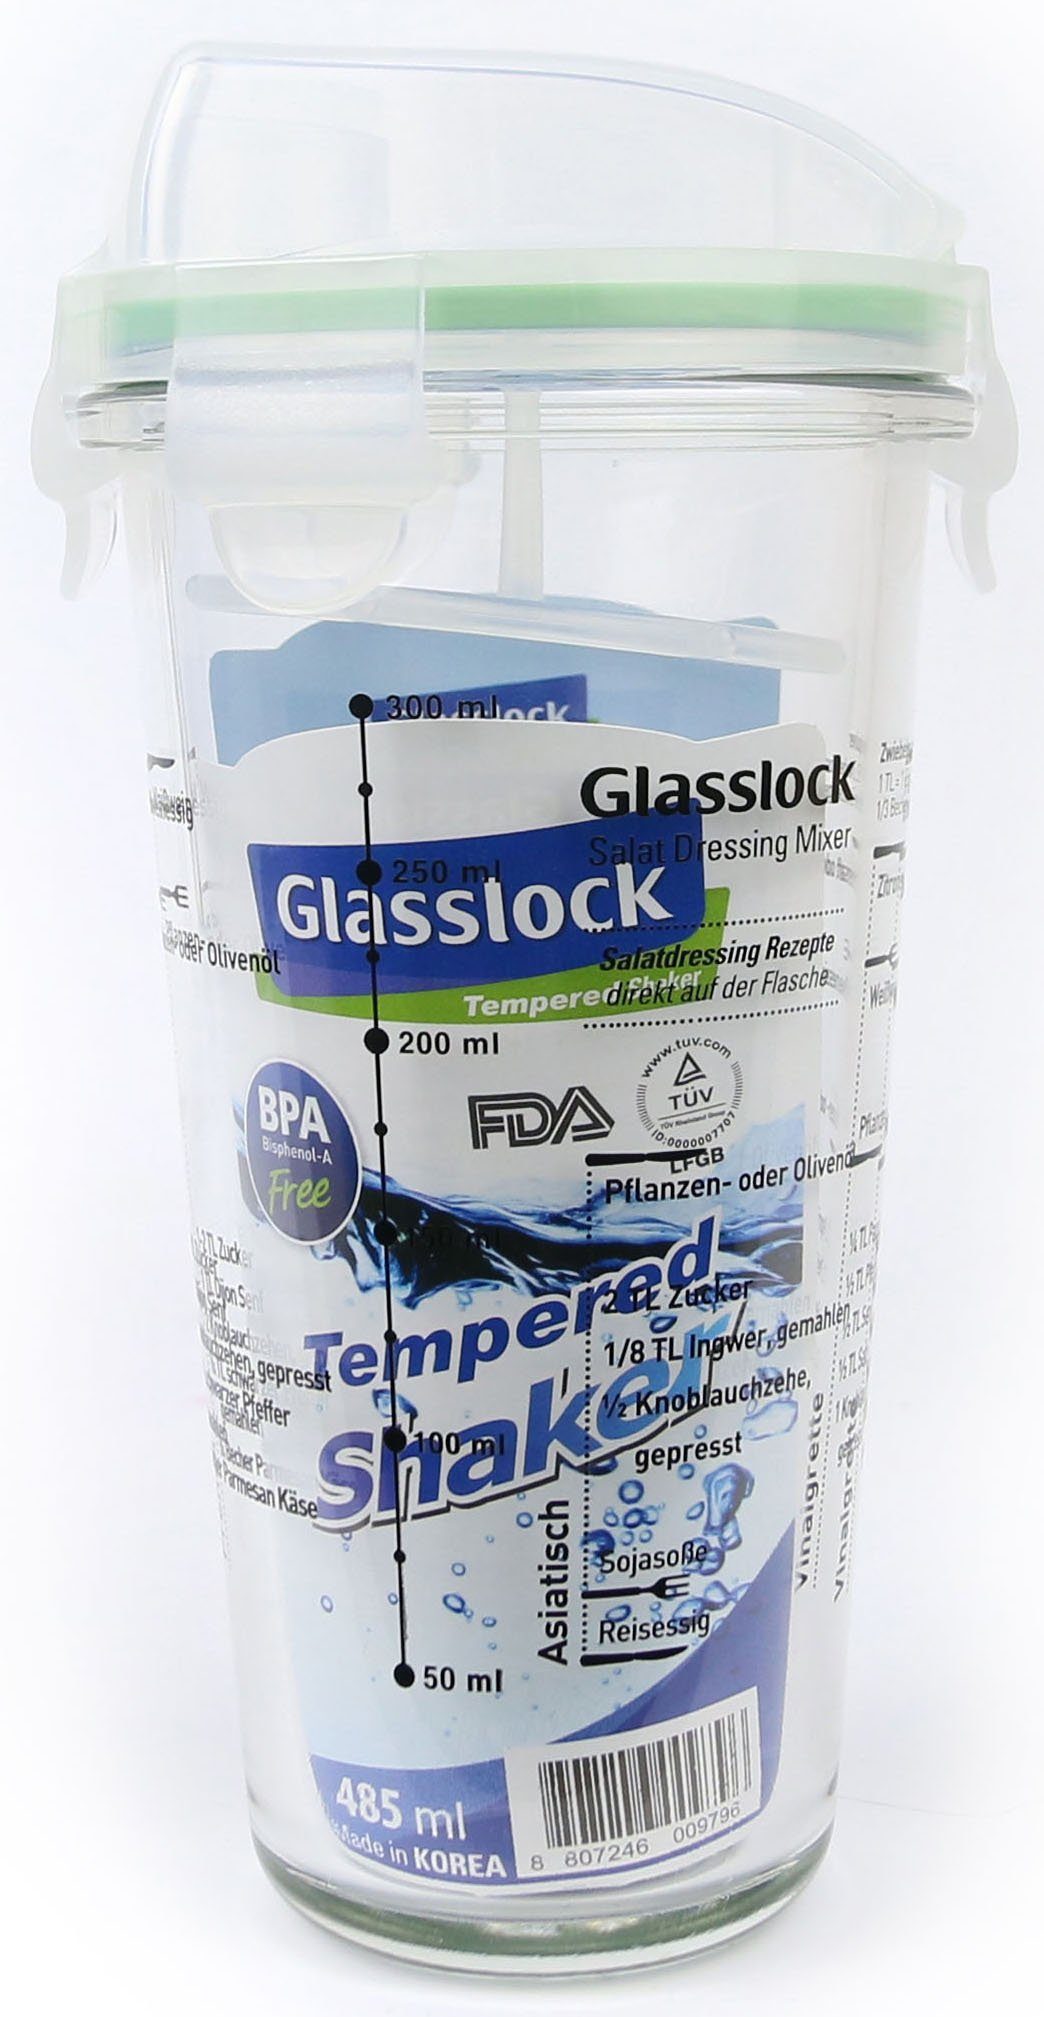 Glas, ml 450 Glasslock Shaker, Dressing (Cocktail Shaker),